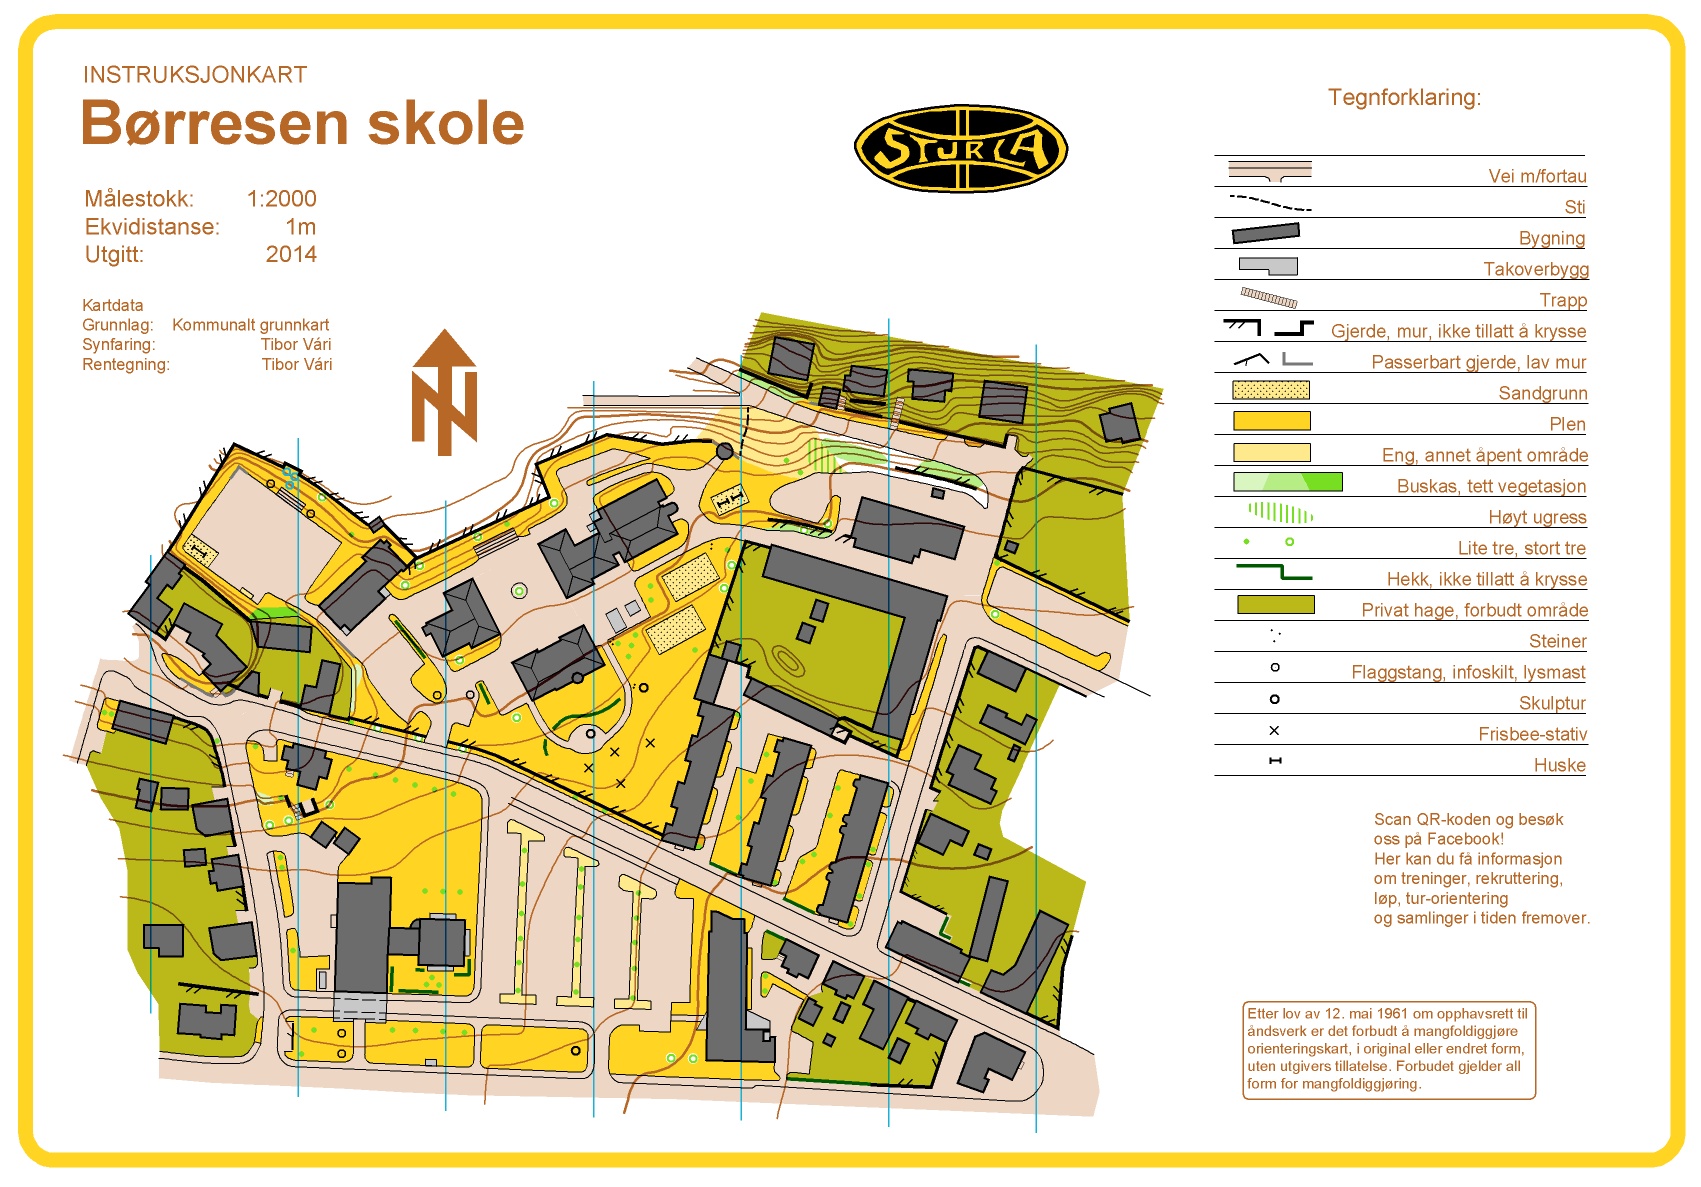 Instruksjonskart - Børresen (13-02-2014)